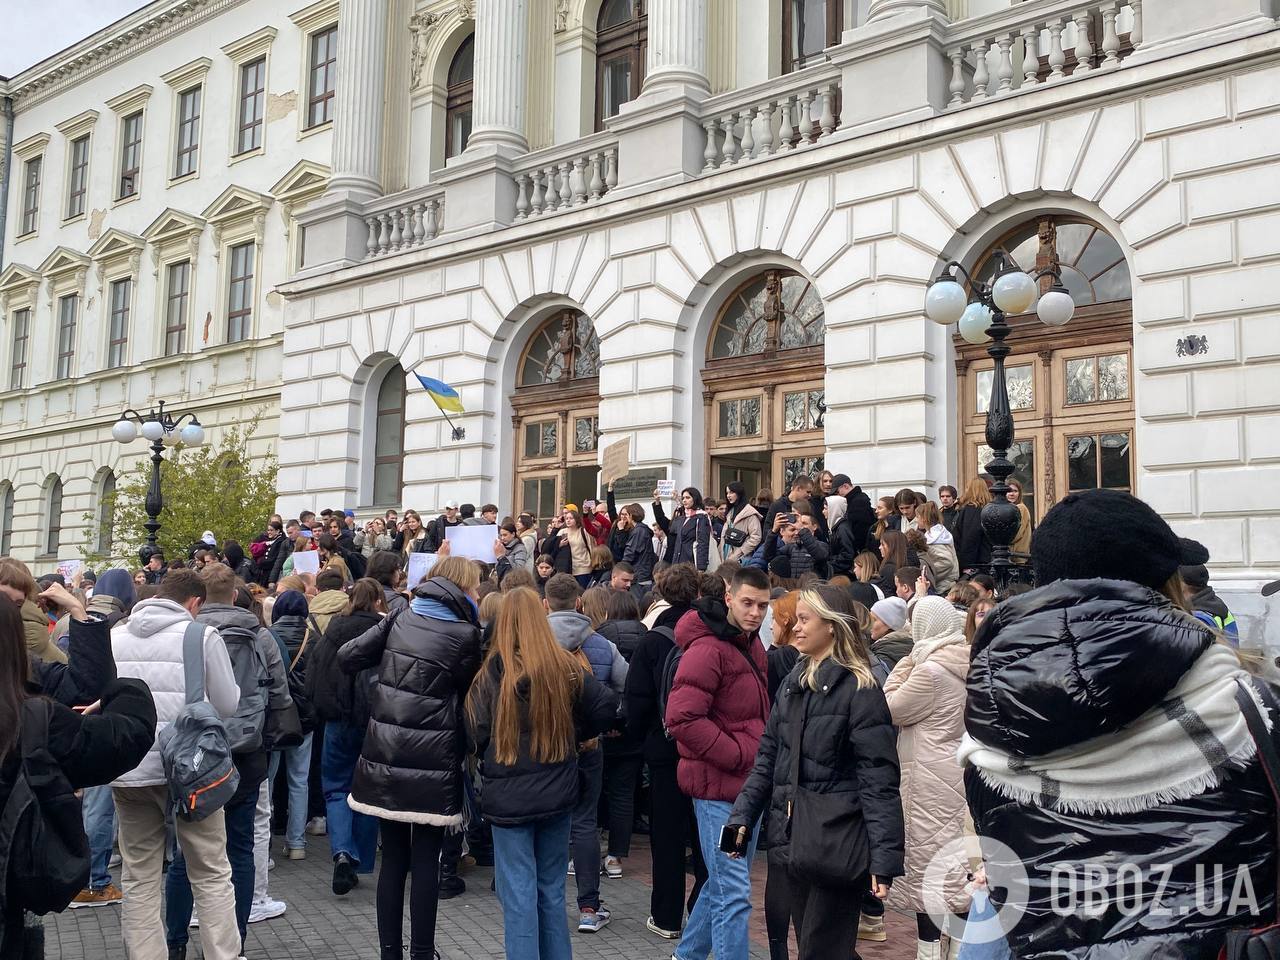 "Позорит Украину": во Львове студенты вышли на митинг с требованием увольнения Фарион. Что известно о скандалах с ее участием